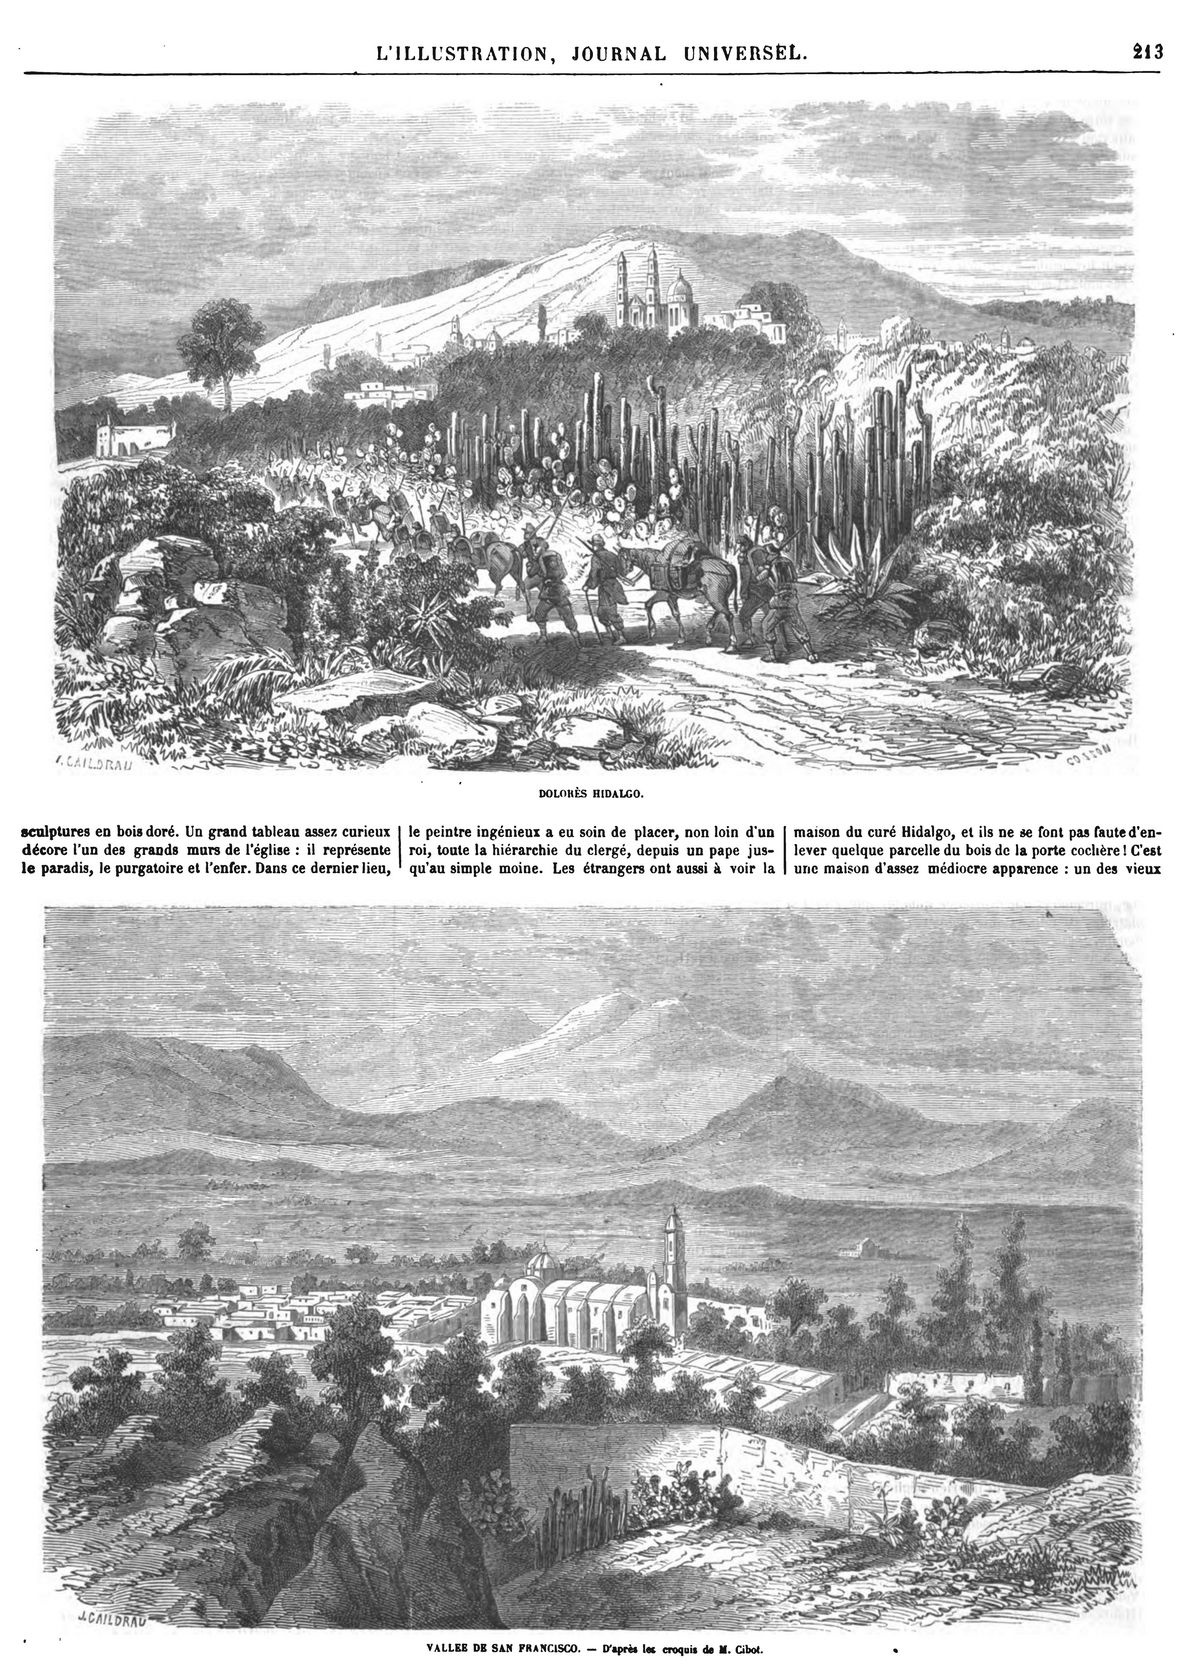 Expédition dans les provinces du nord du Mexique (4 gravures). DOLORÈS HIDALGO. VALLEE DE SAN FRANCISC0.